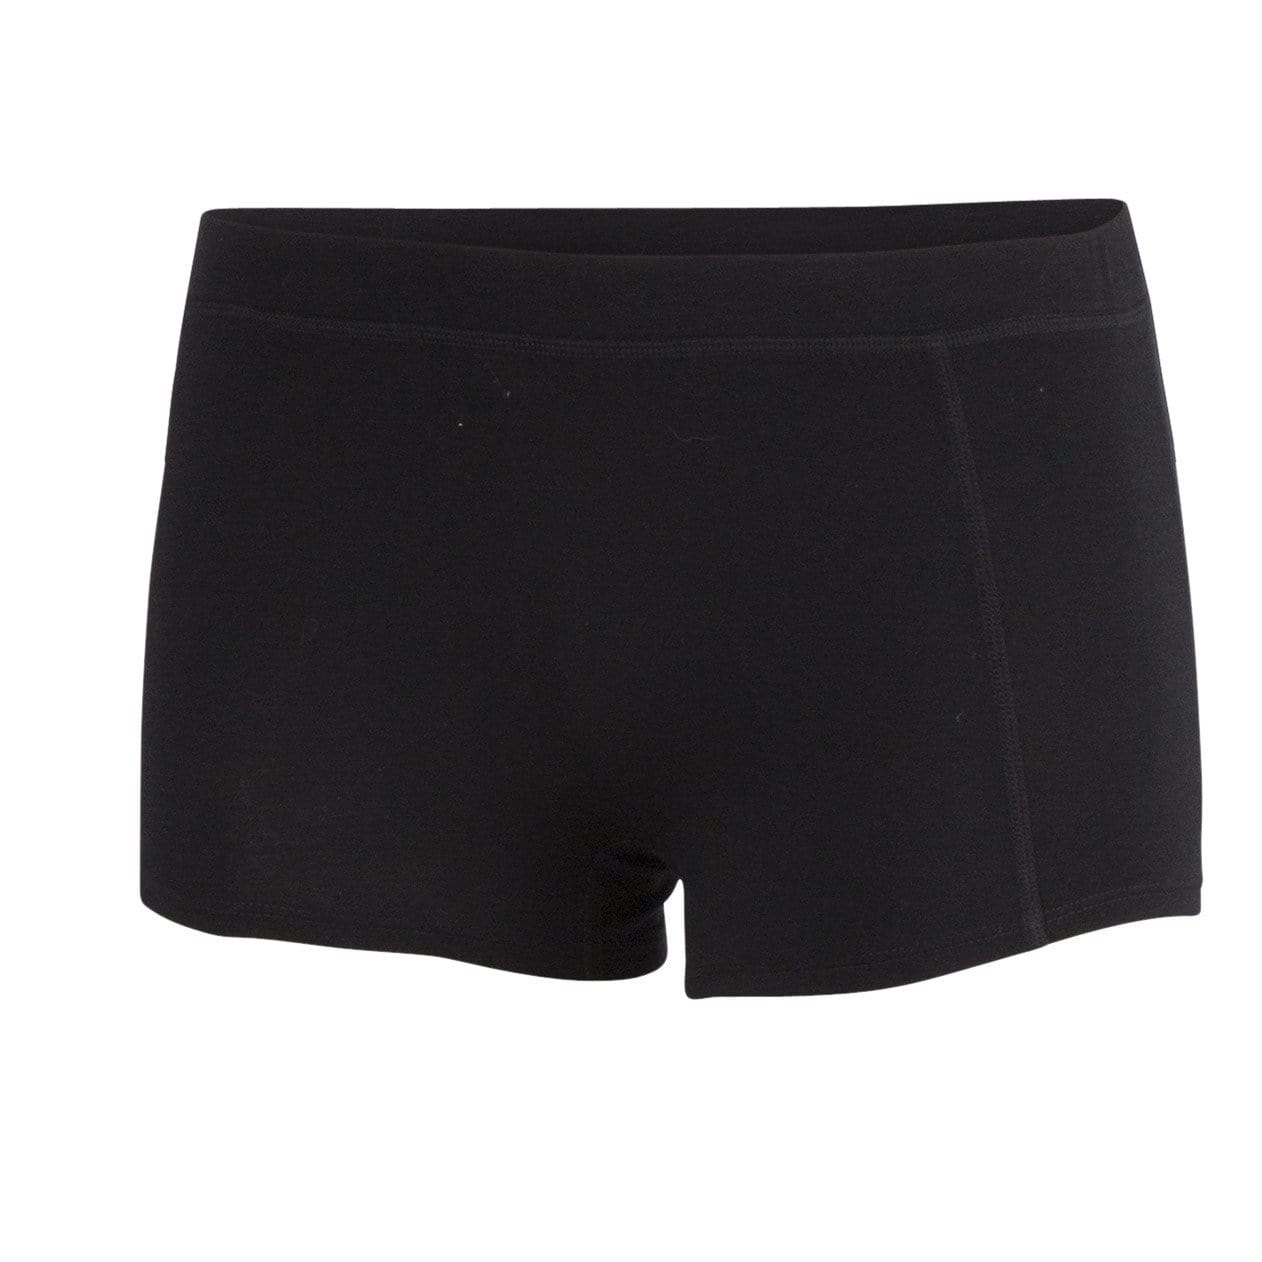 Merino wool underwear boy shorts